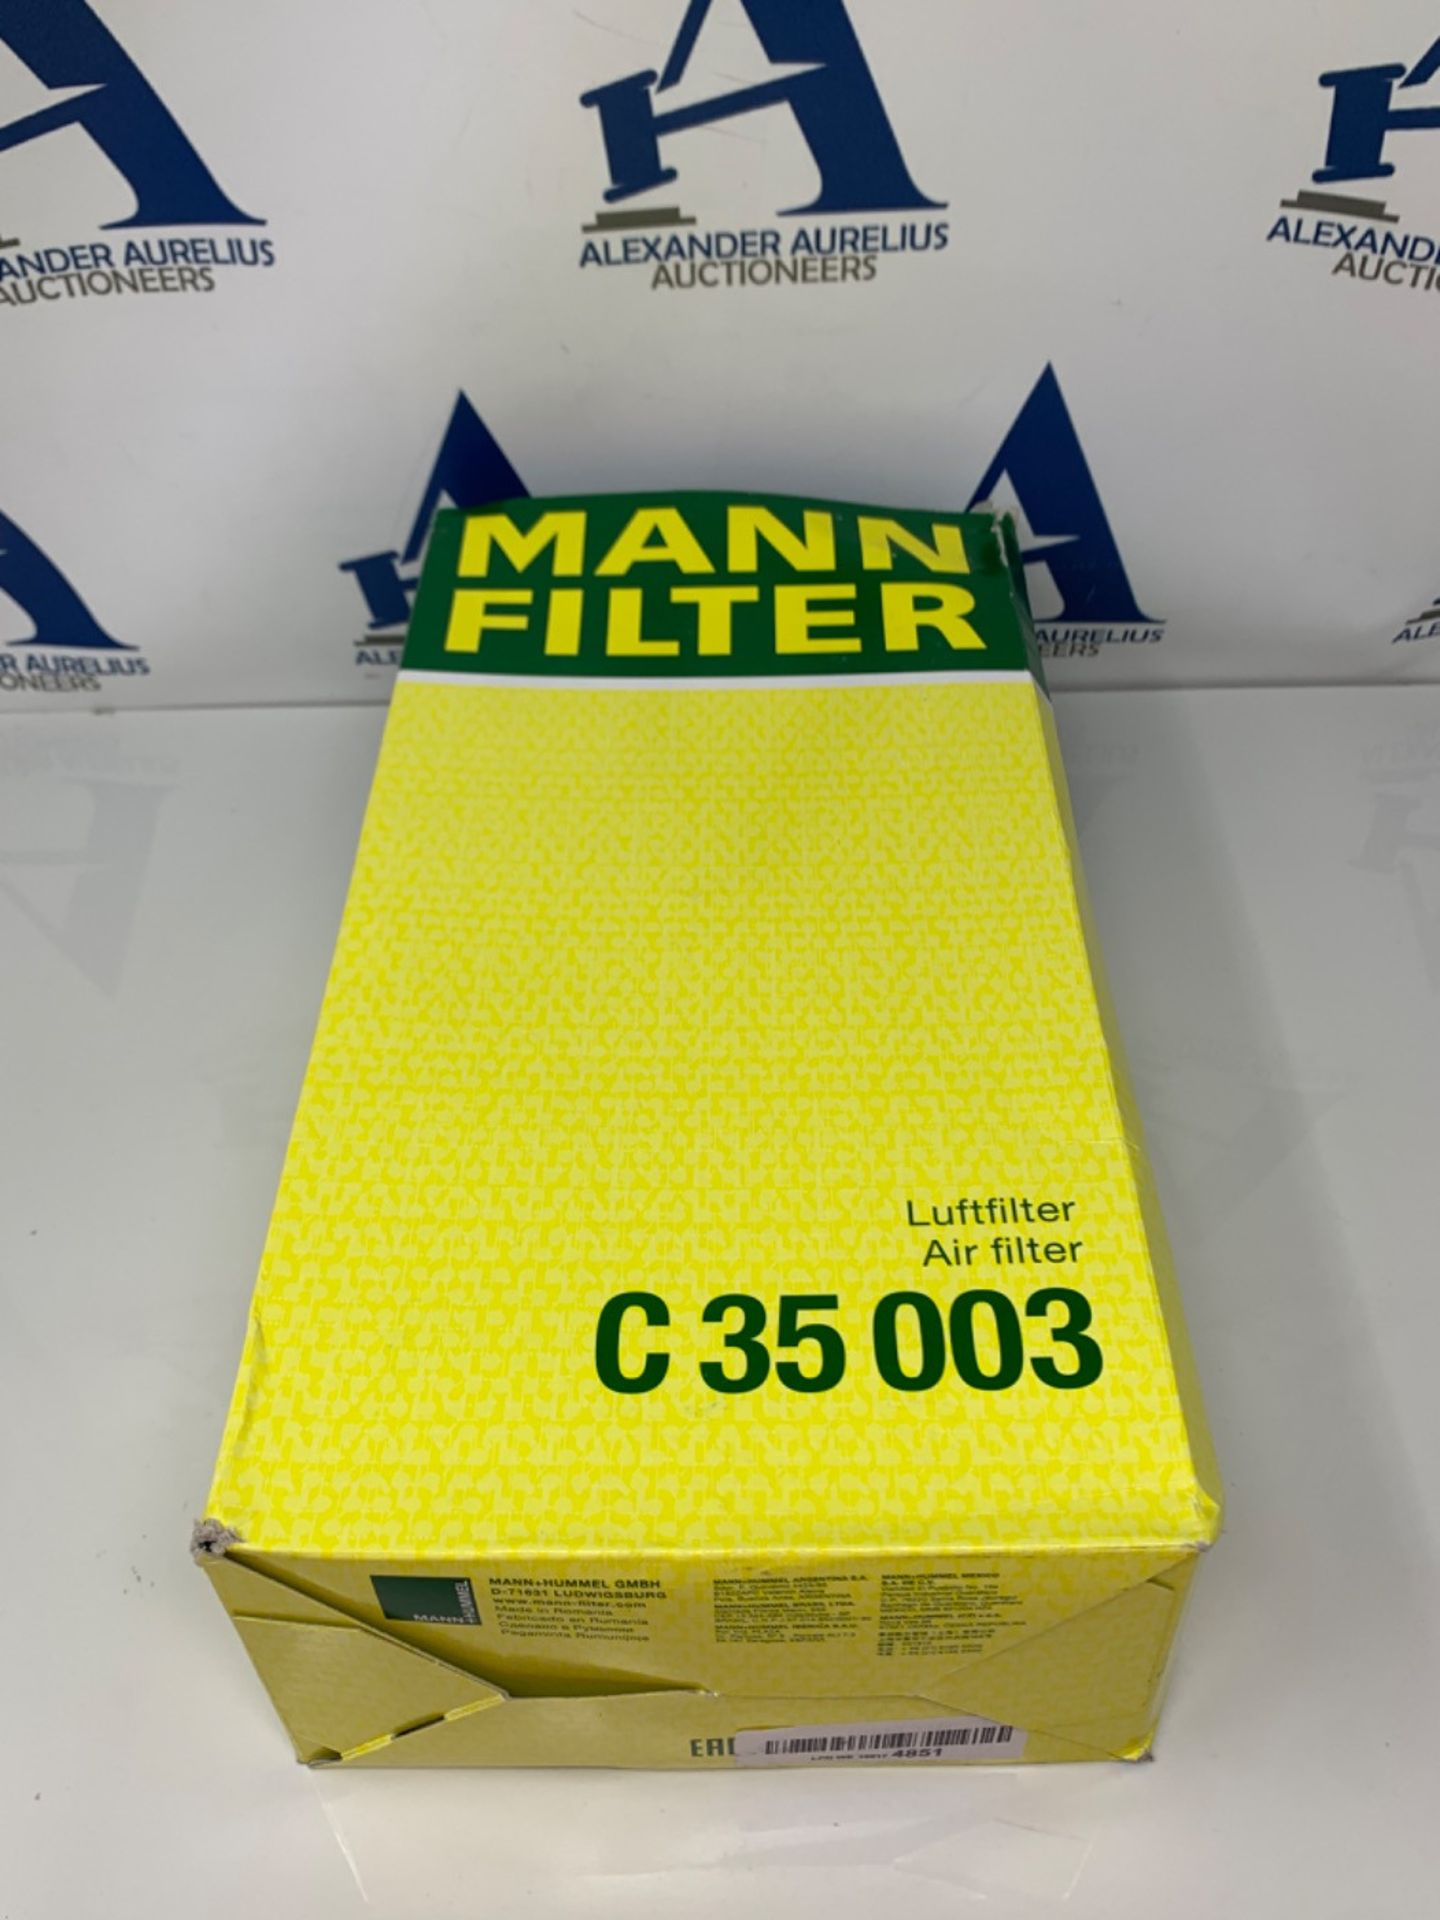 MANN-FILTER C 35 003 Air Filter  For Passenger Cars - Image 2 of 3